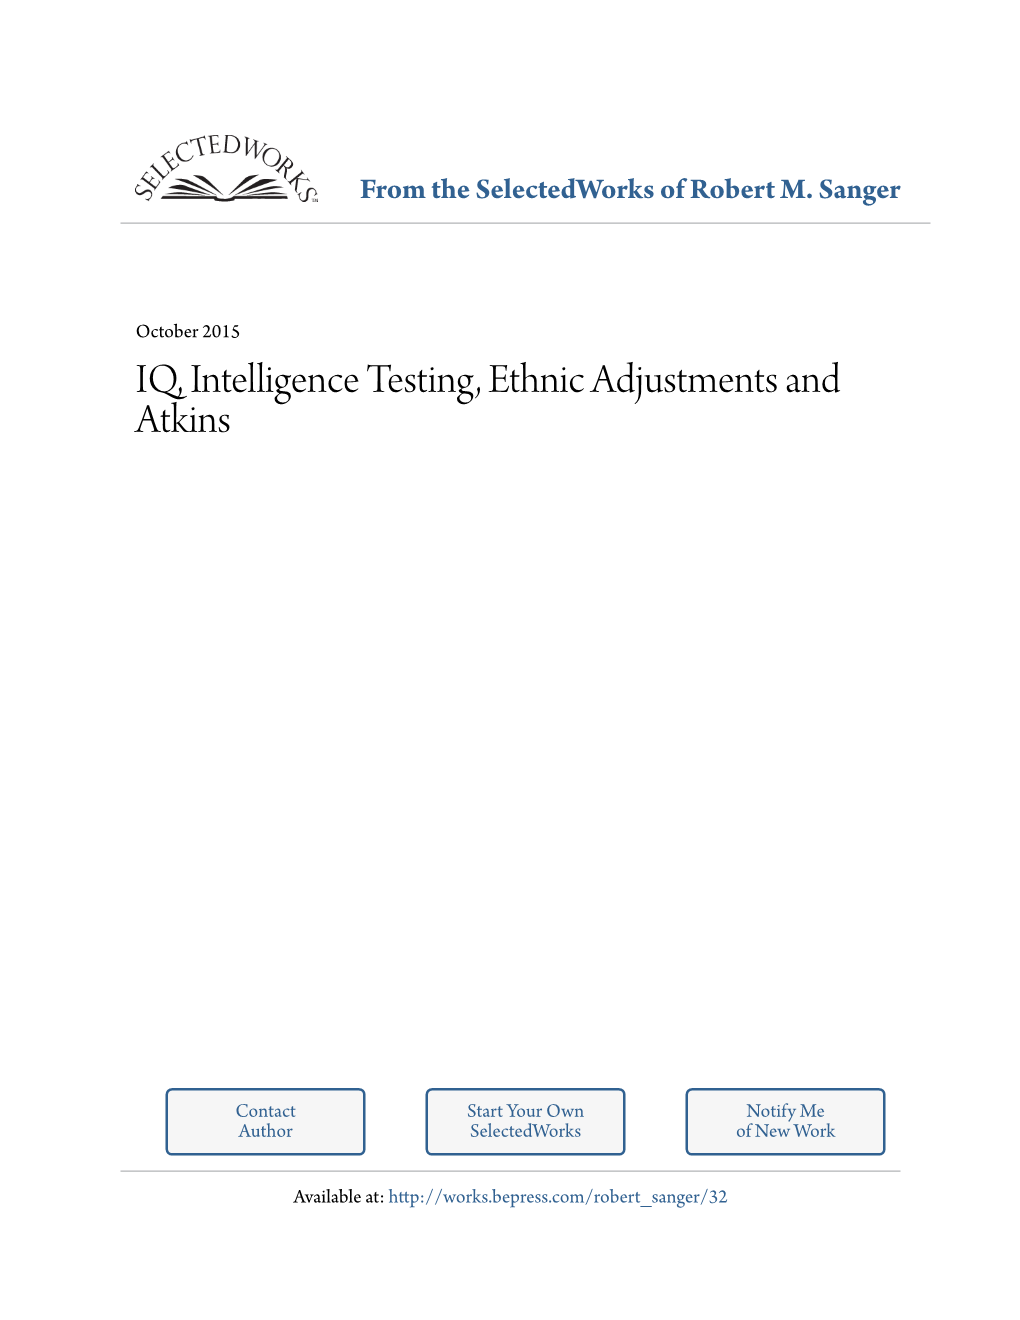 IQ, Intelligence Testing, Ethnic Adjustments and Atkins